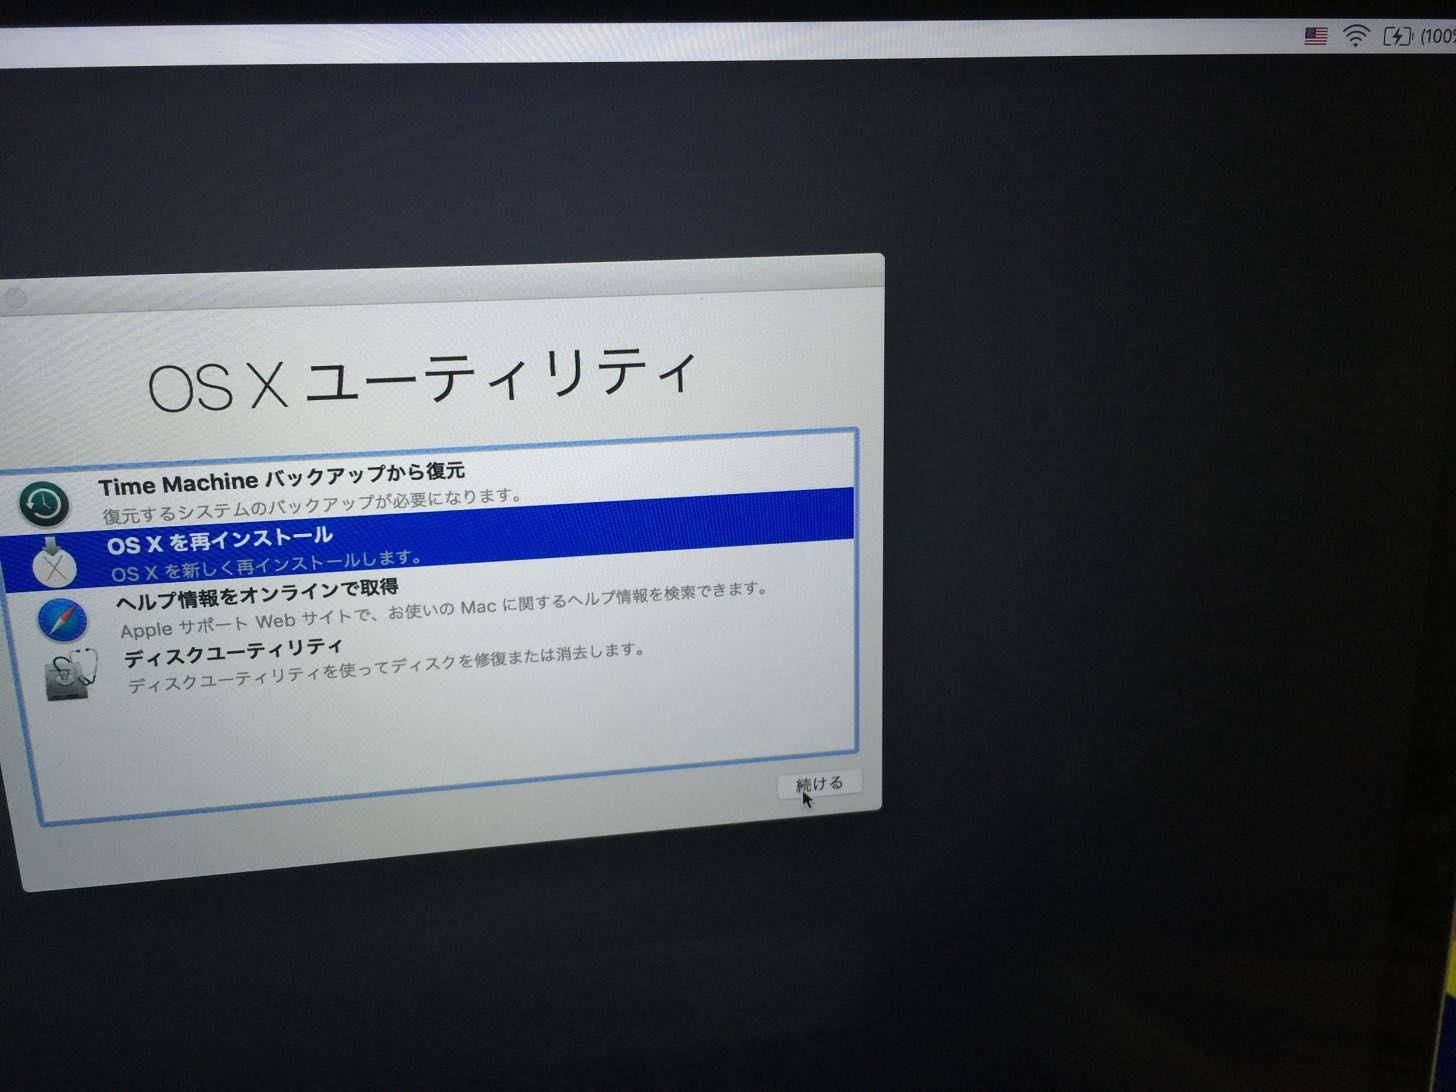 OS X El Capitanのクリーンインストールを開始。